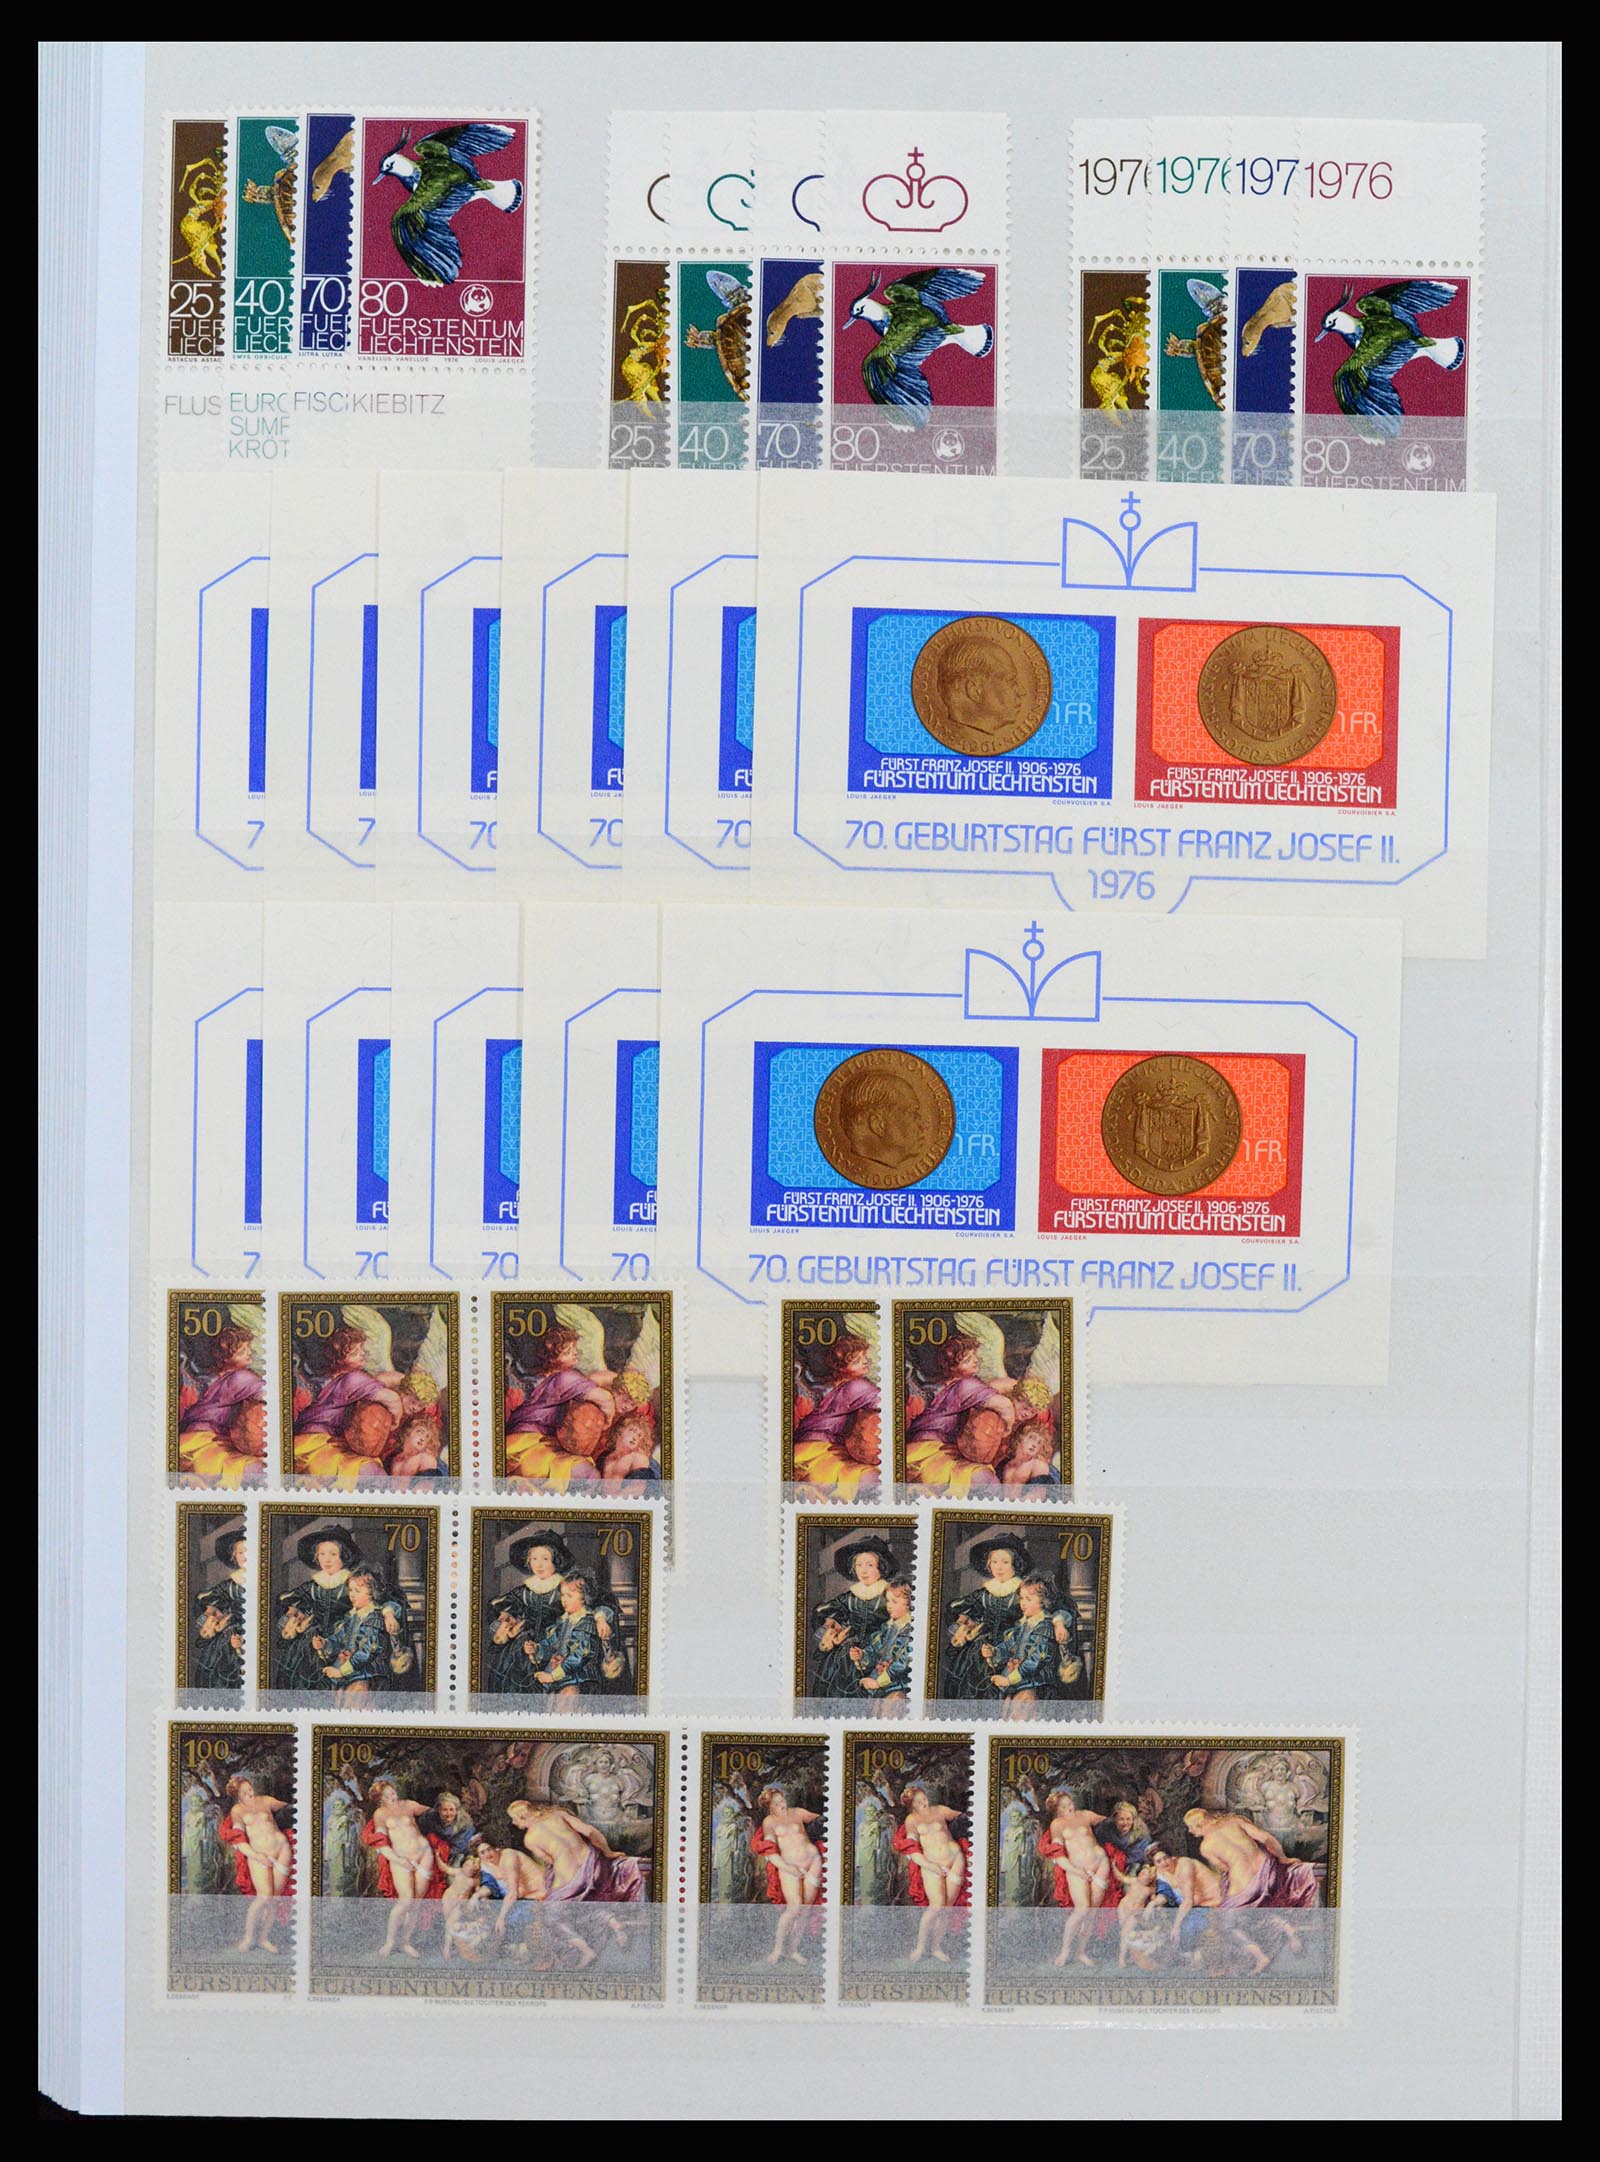 37261 042 - Stamp collection 37261 Liechtenstein 1961-1995.